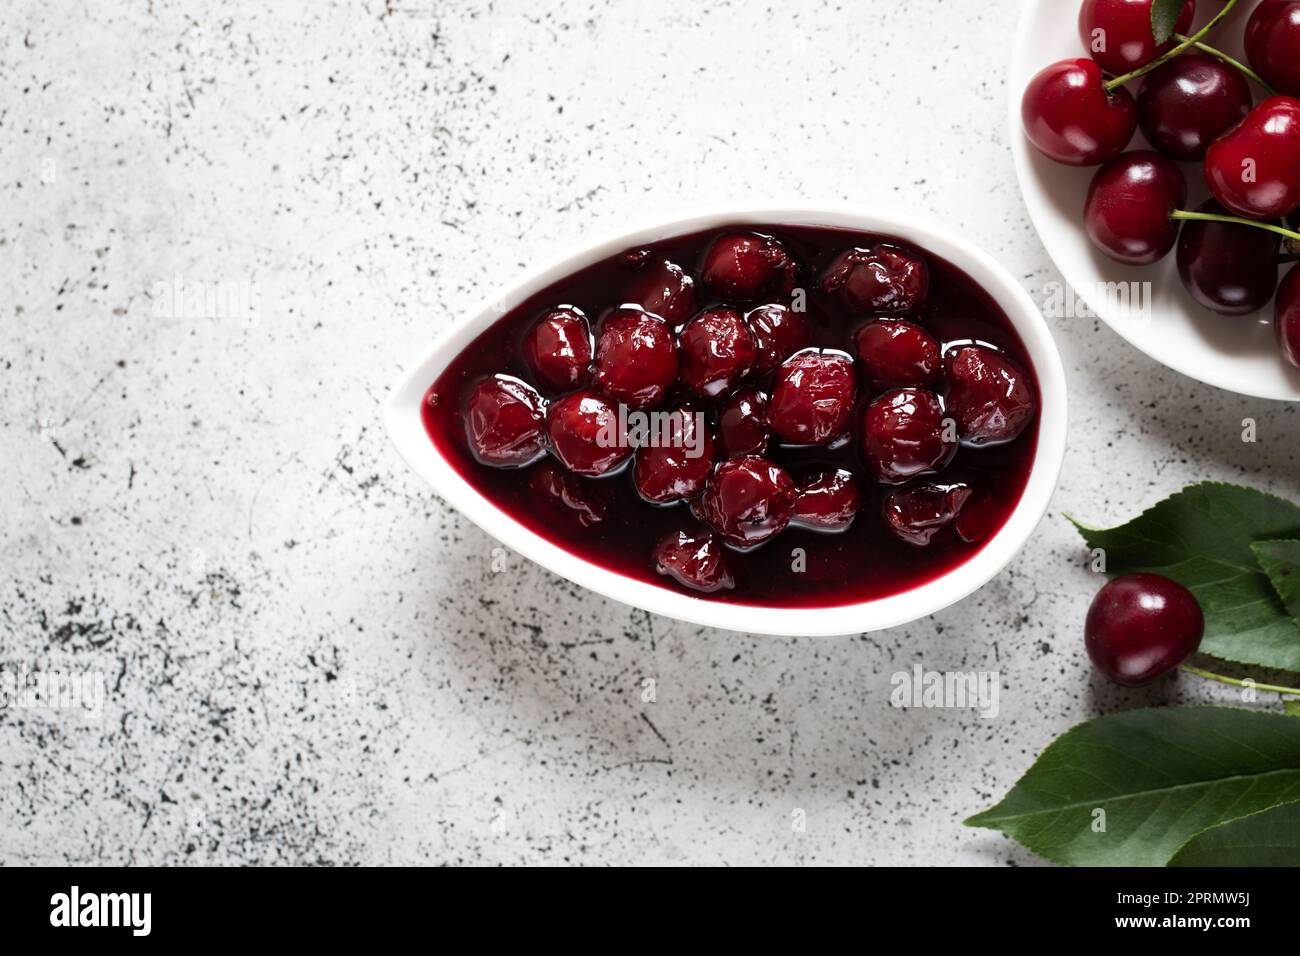 confettura di ciliegie e ciliegie fresche in una ciotola, conserve fatte in casa Foto Stock